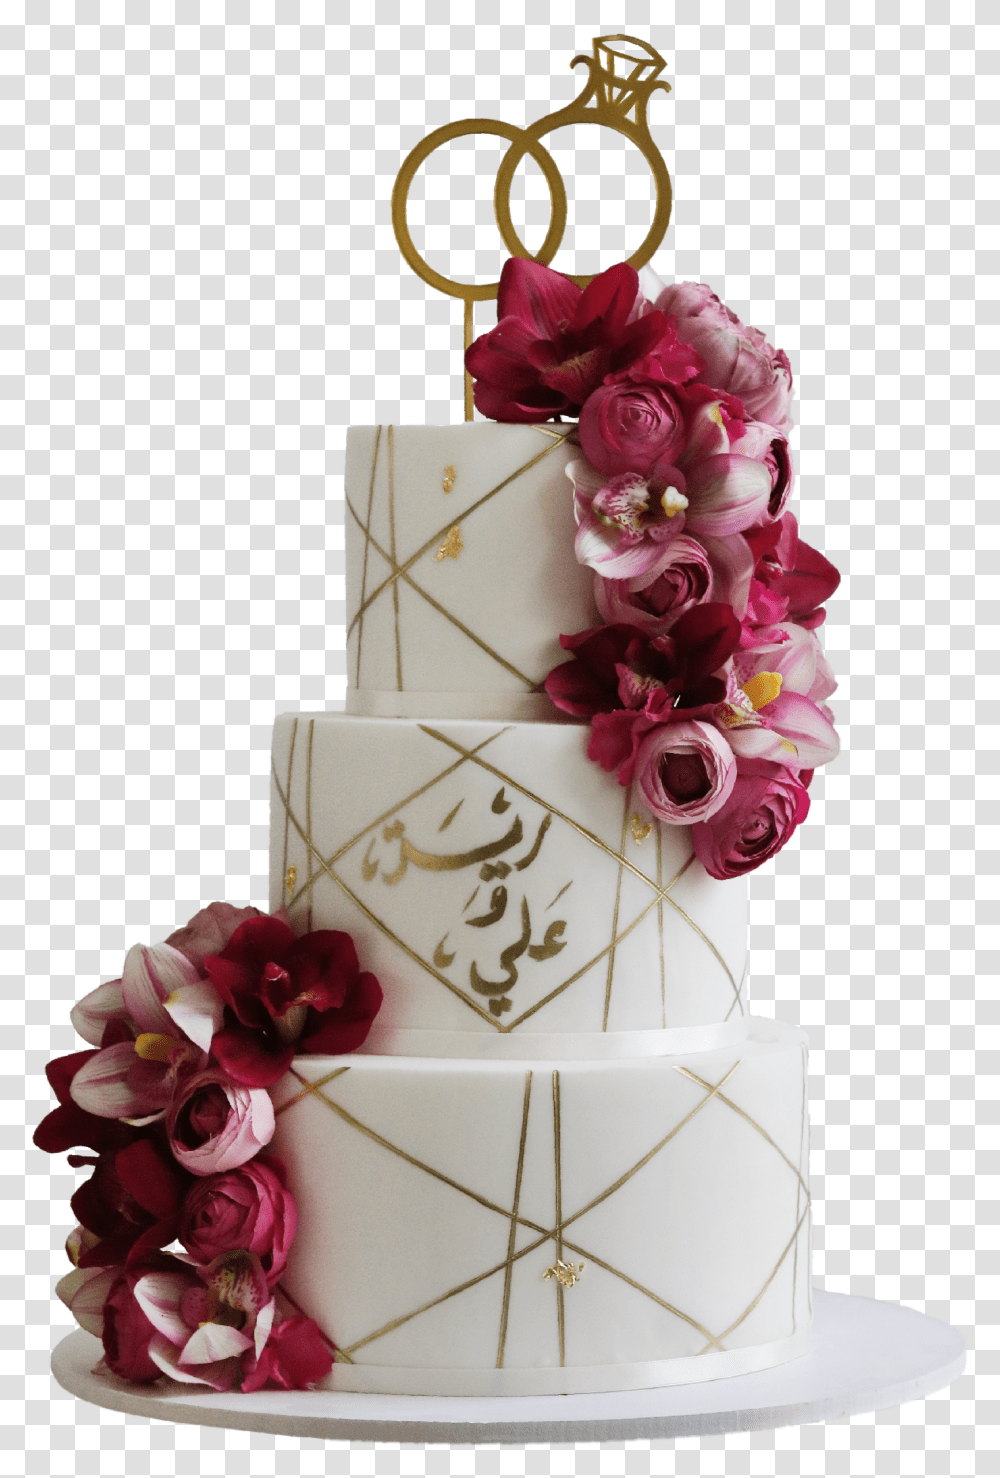 Golden Line 3 Layer Cake Wedding Cake, Dessert, Food, Apparel Transparent Png